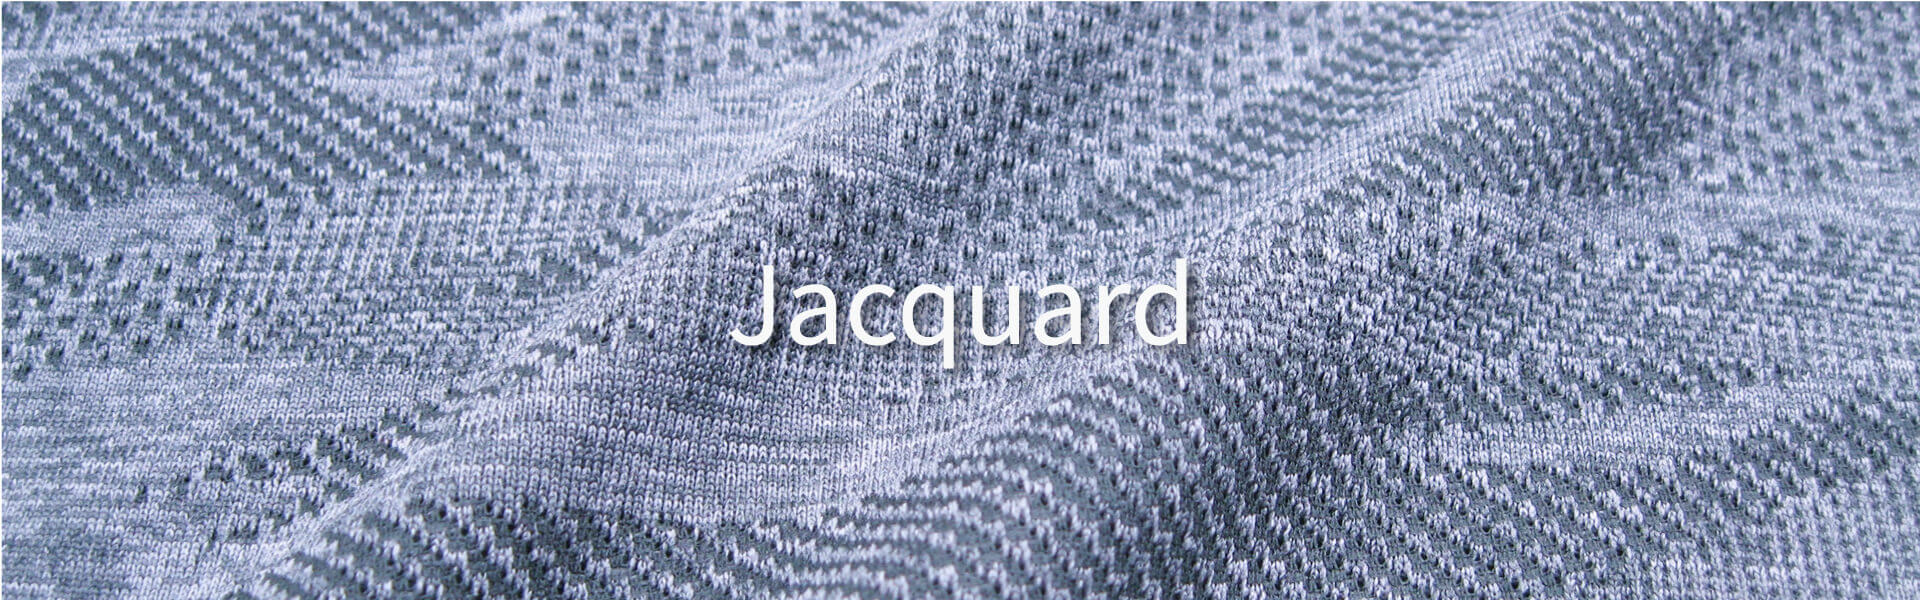 jacquard